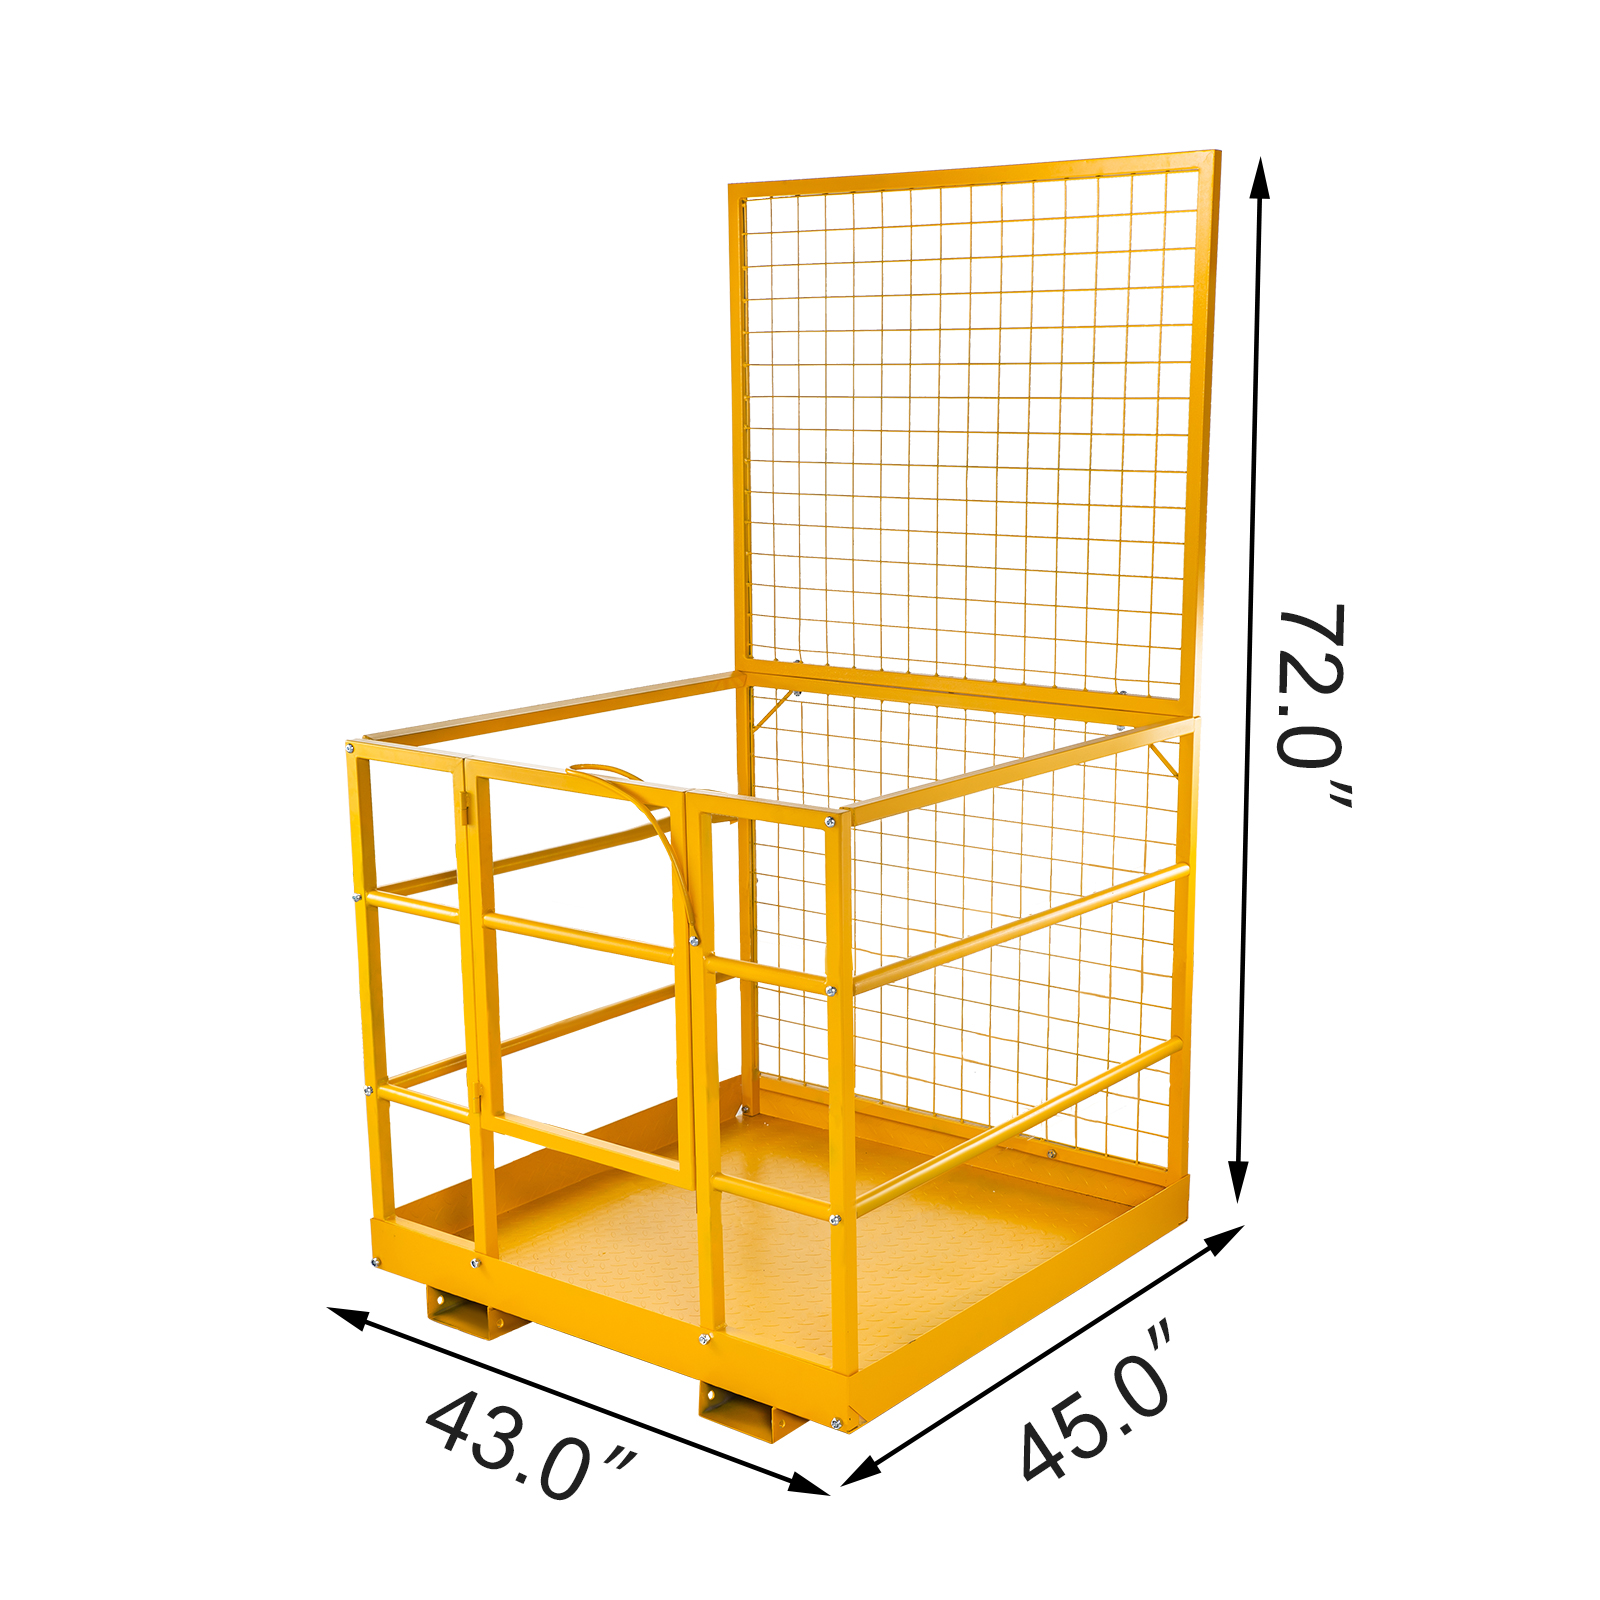 300kg FORKLIFT SAFETY ACCESS WORK PLATFORM COLLAPSIBLE foldaway man cage basket 